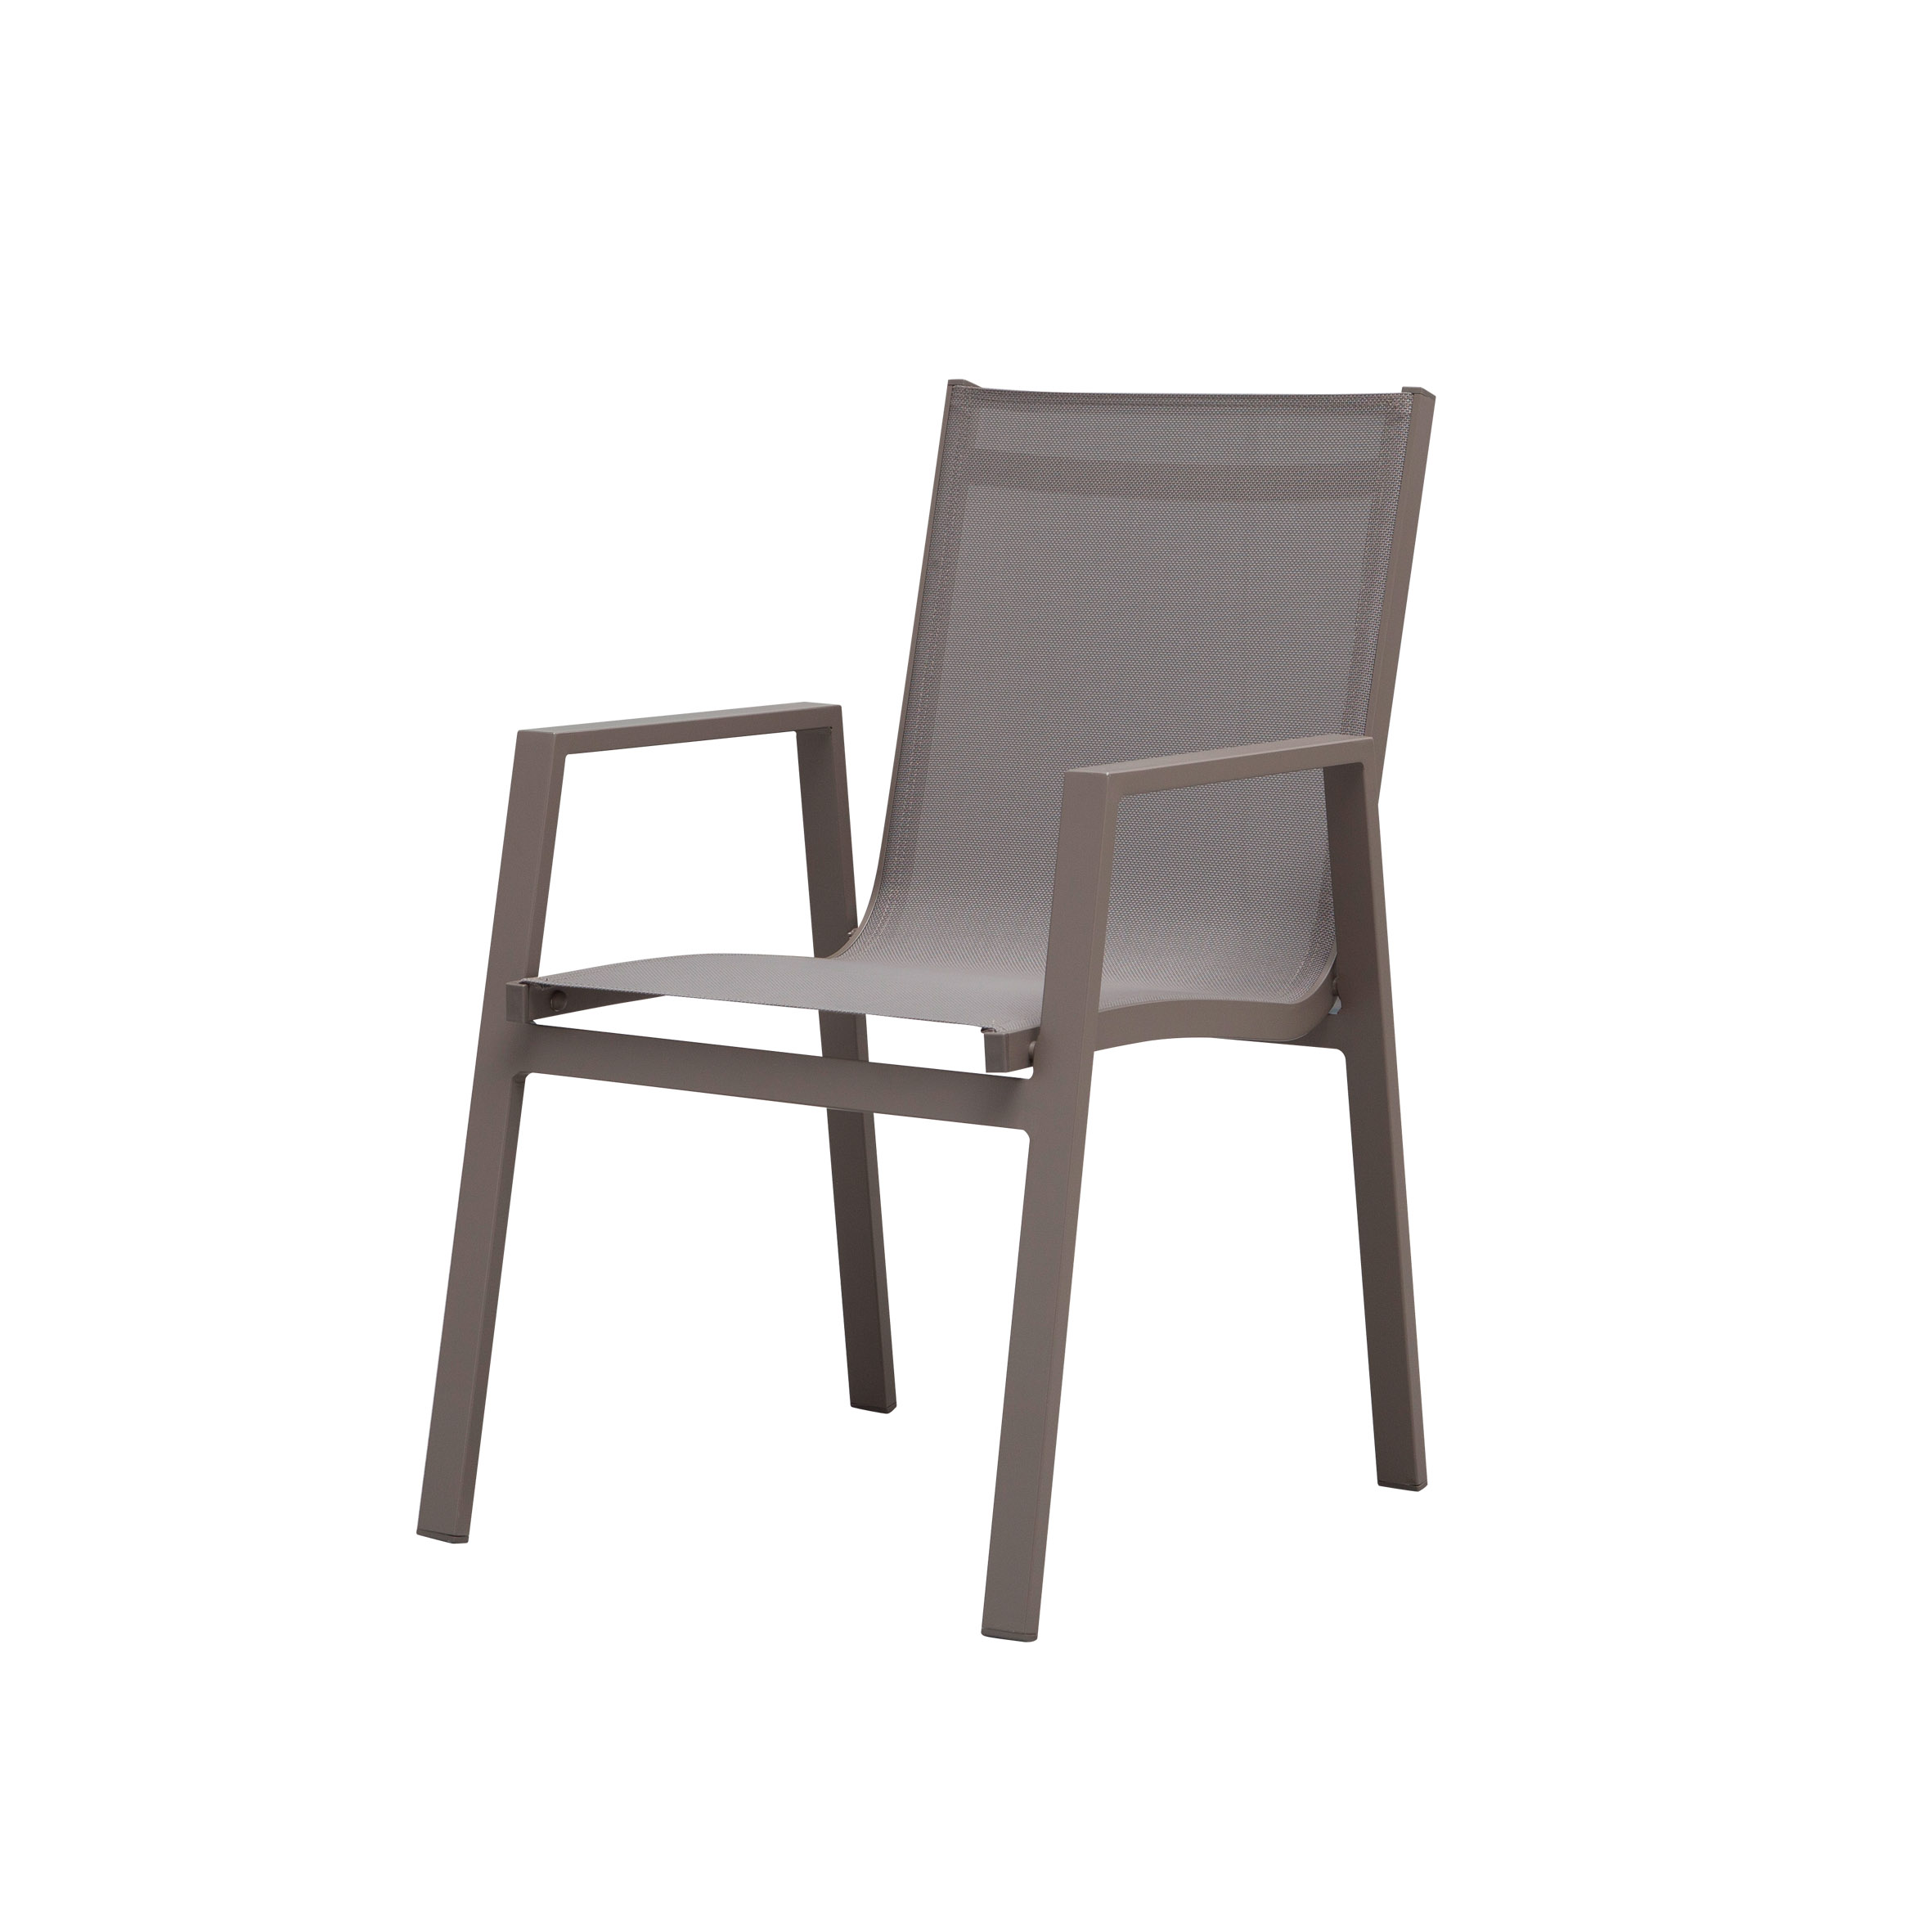 Білосніжний текстильний обідній стілець S6